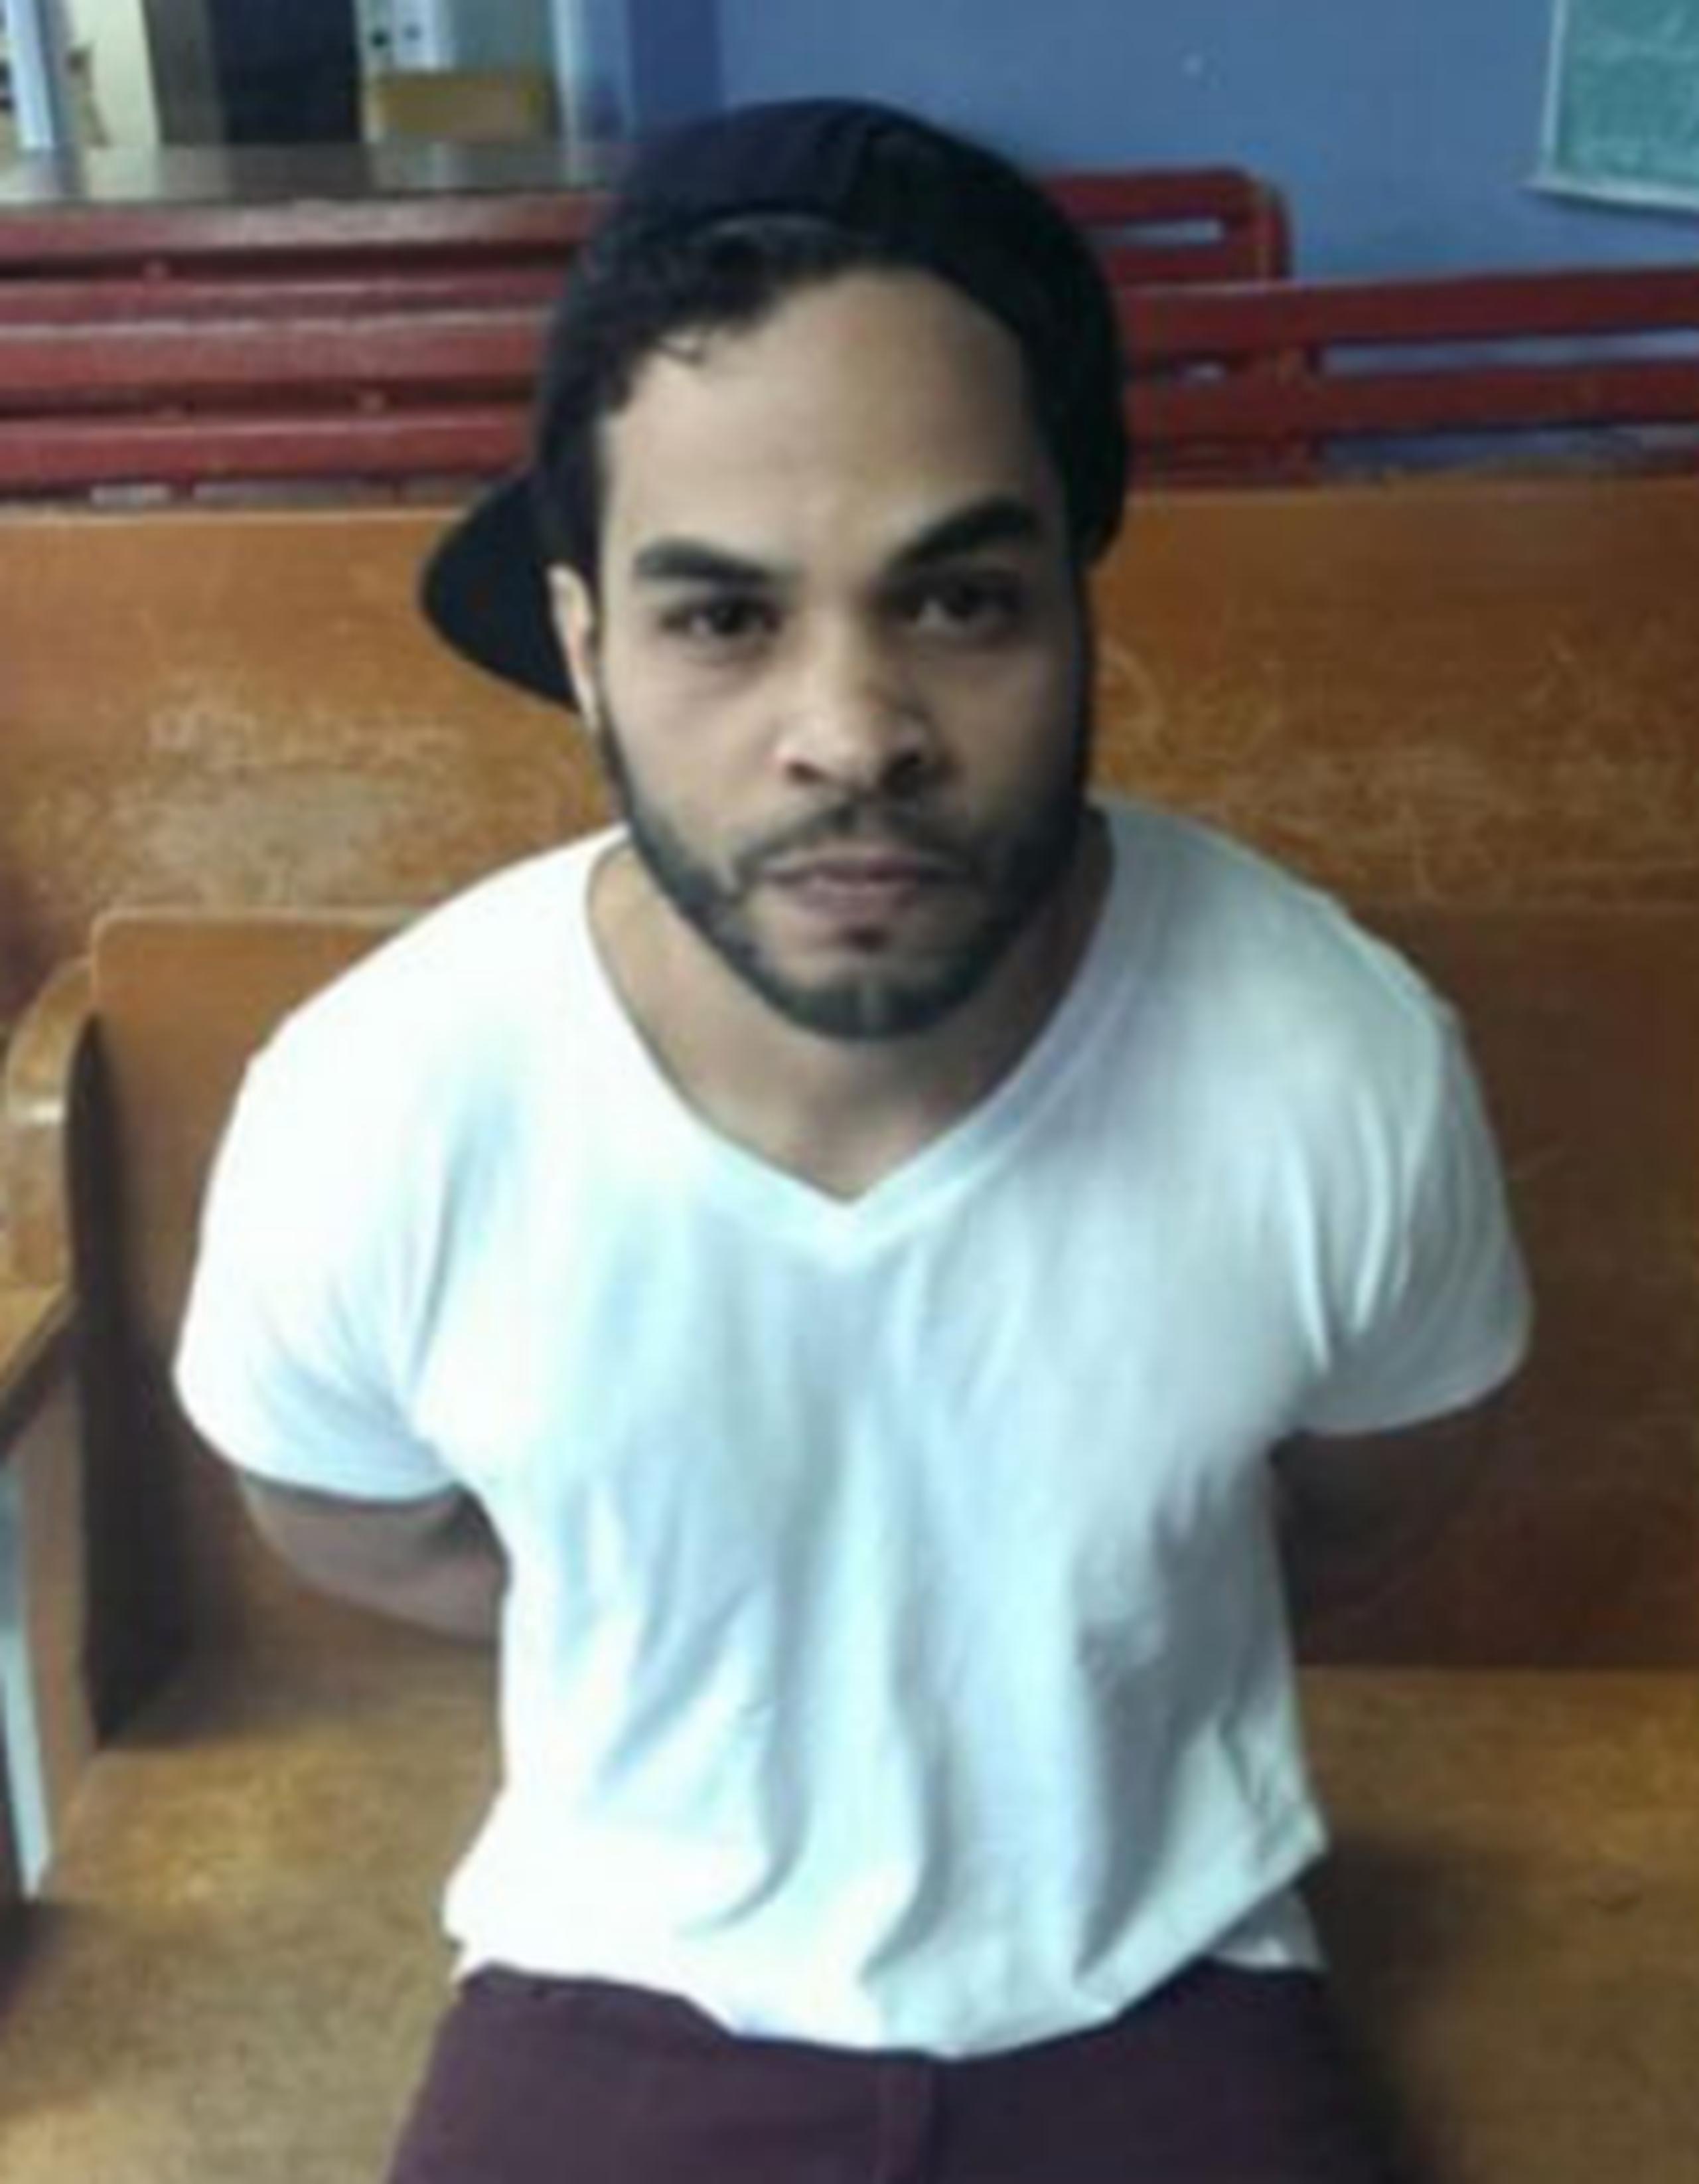 Joselito Ferreira, conocido como Pókemon, fue arrestado por las autoridades en el centro comercial Plaza Las Américas. (Suministrada)